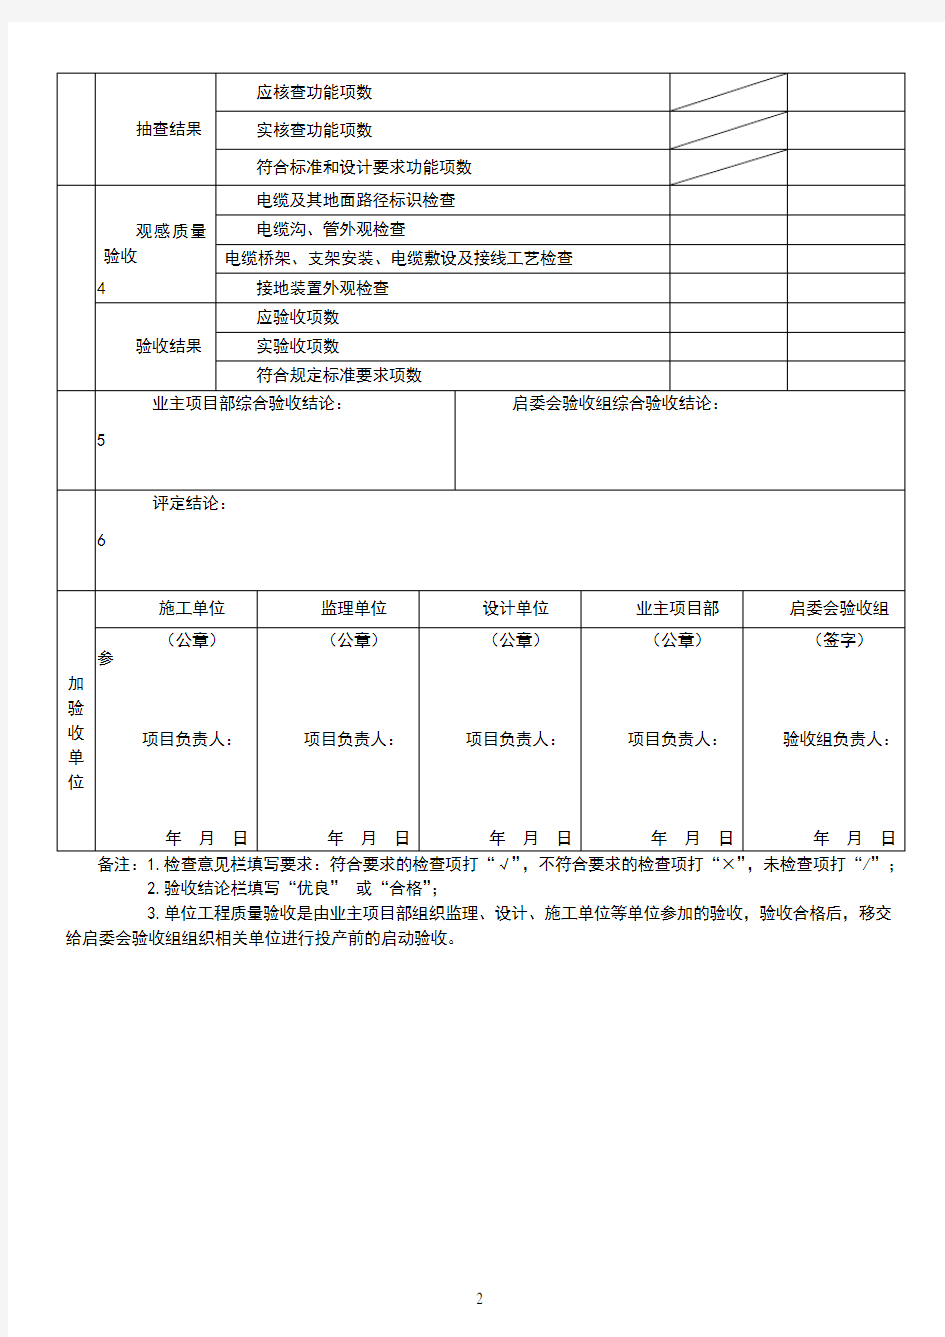 表8-2.0电缆线路工程单位工程质量验收与评定记录表